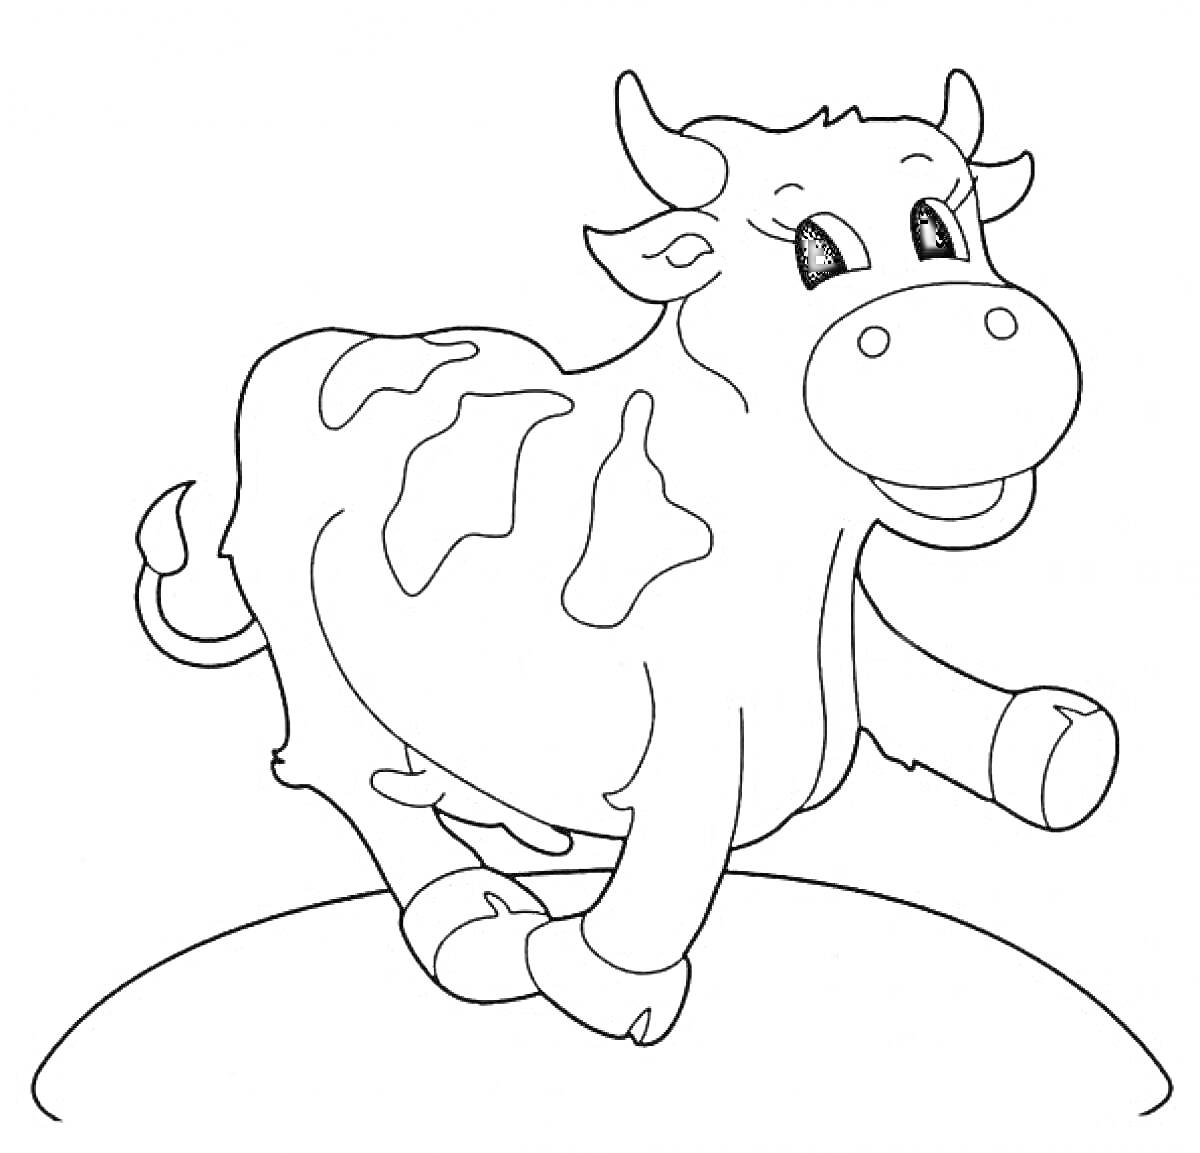 Корова на земле с пятнами, улыбкой и поднятой ногой